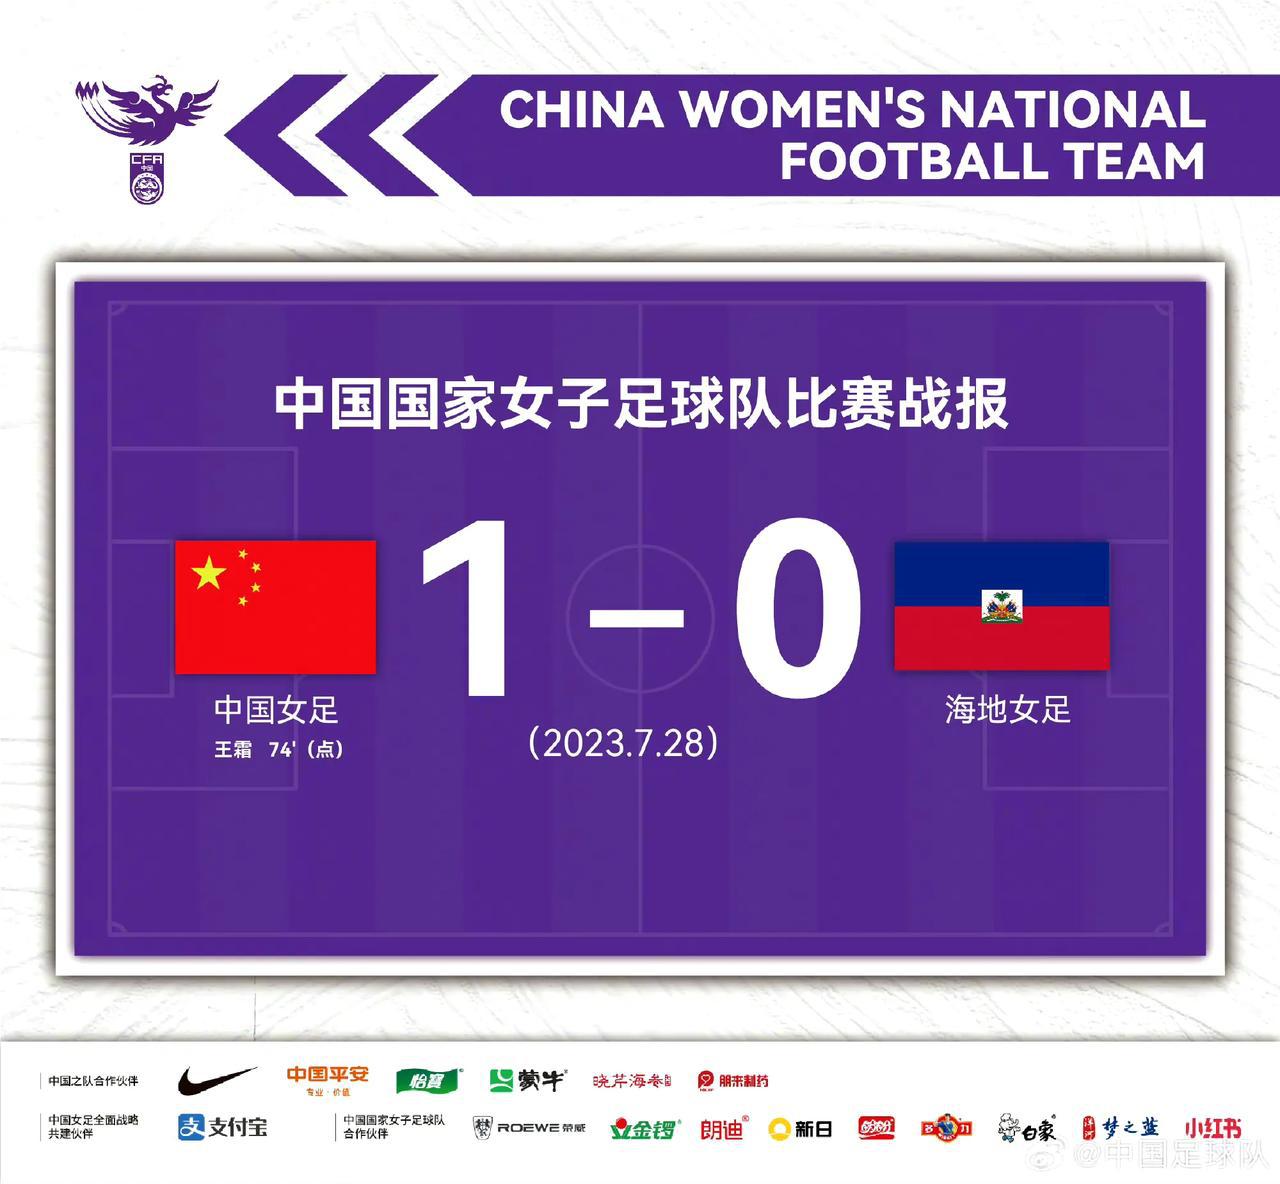 祝贺祝贺！中国队终于取得了首胜，只是没想到这么艰难。原来以为中国女足打赢海地女足(2)